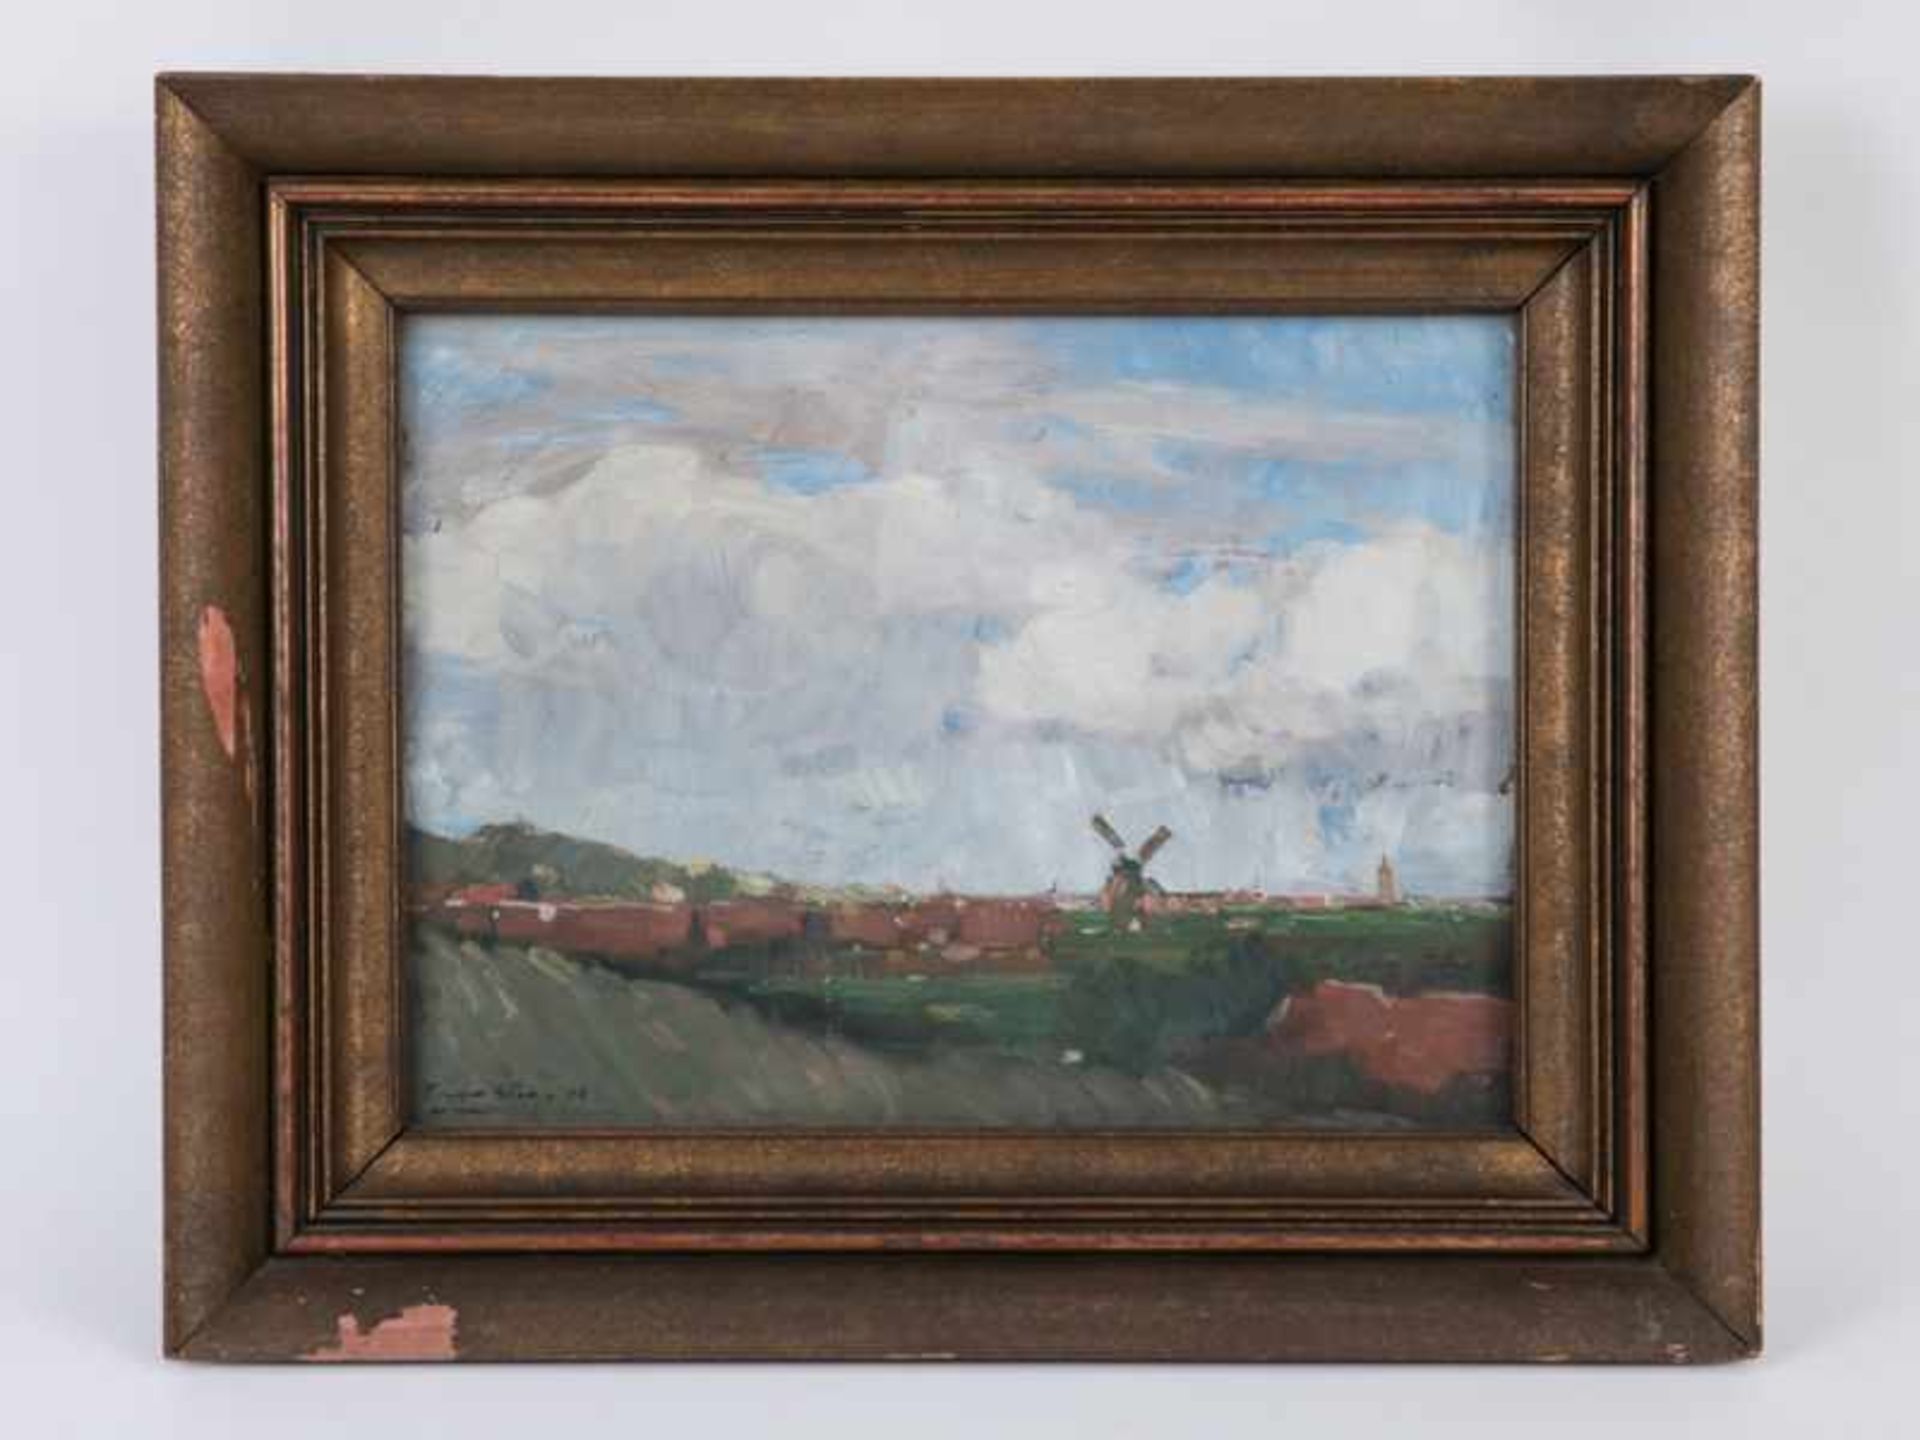 Köster, Eduard (1883 - 1910). Öl auf Malkarton (?), "Weite Landschaft unter sommerlichem